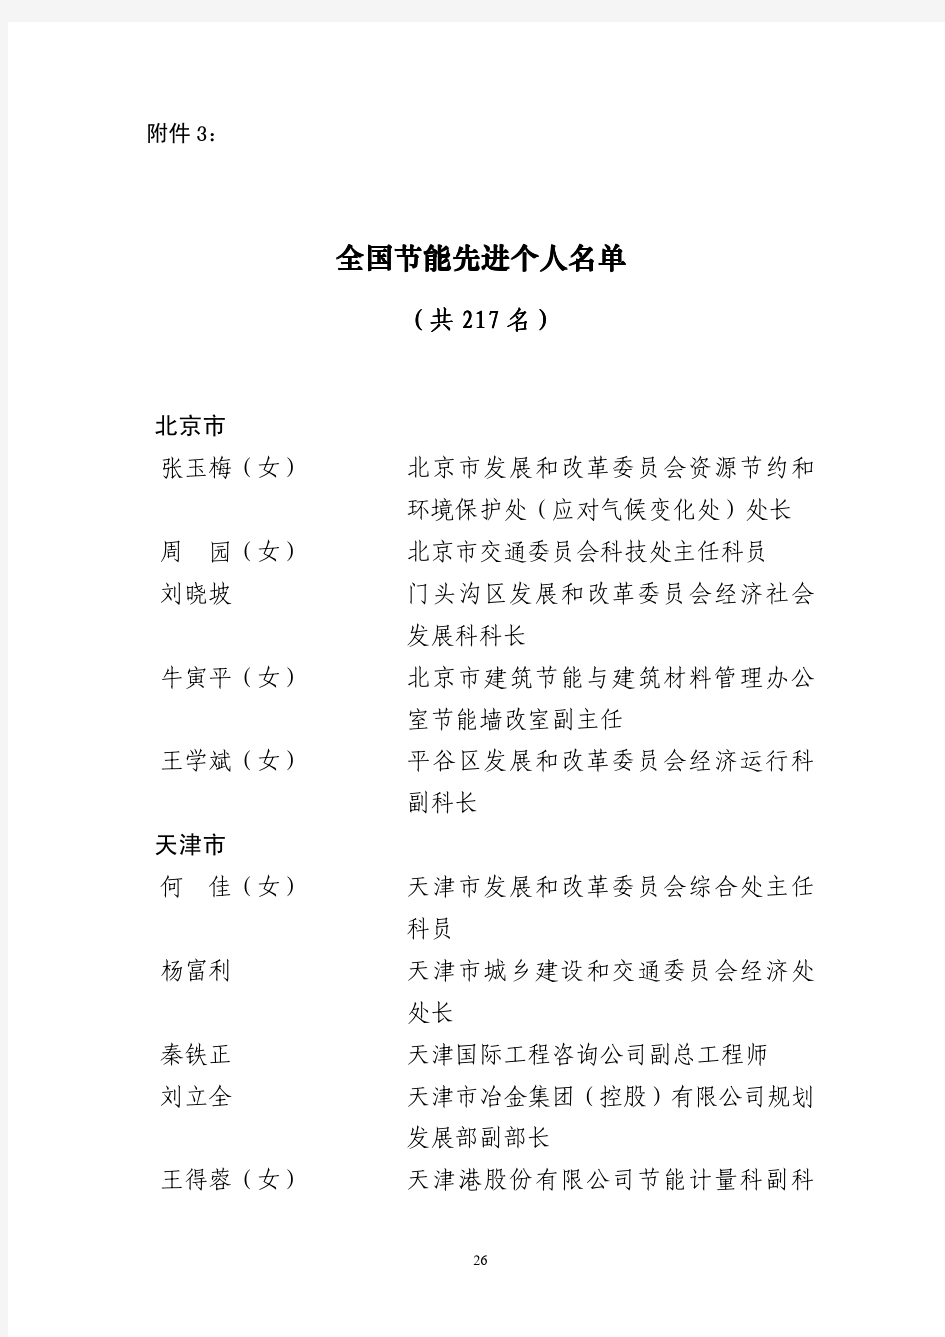 全国节能先进个人名单 - 中华人民共和国环境保护部